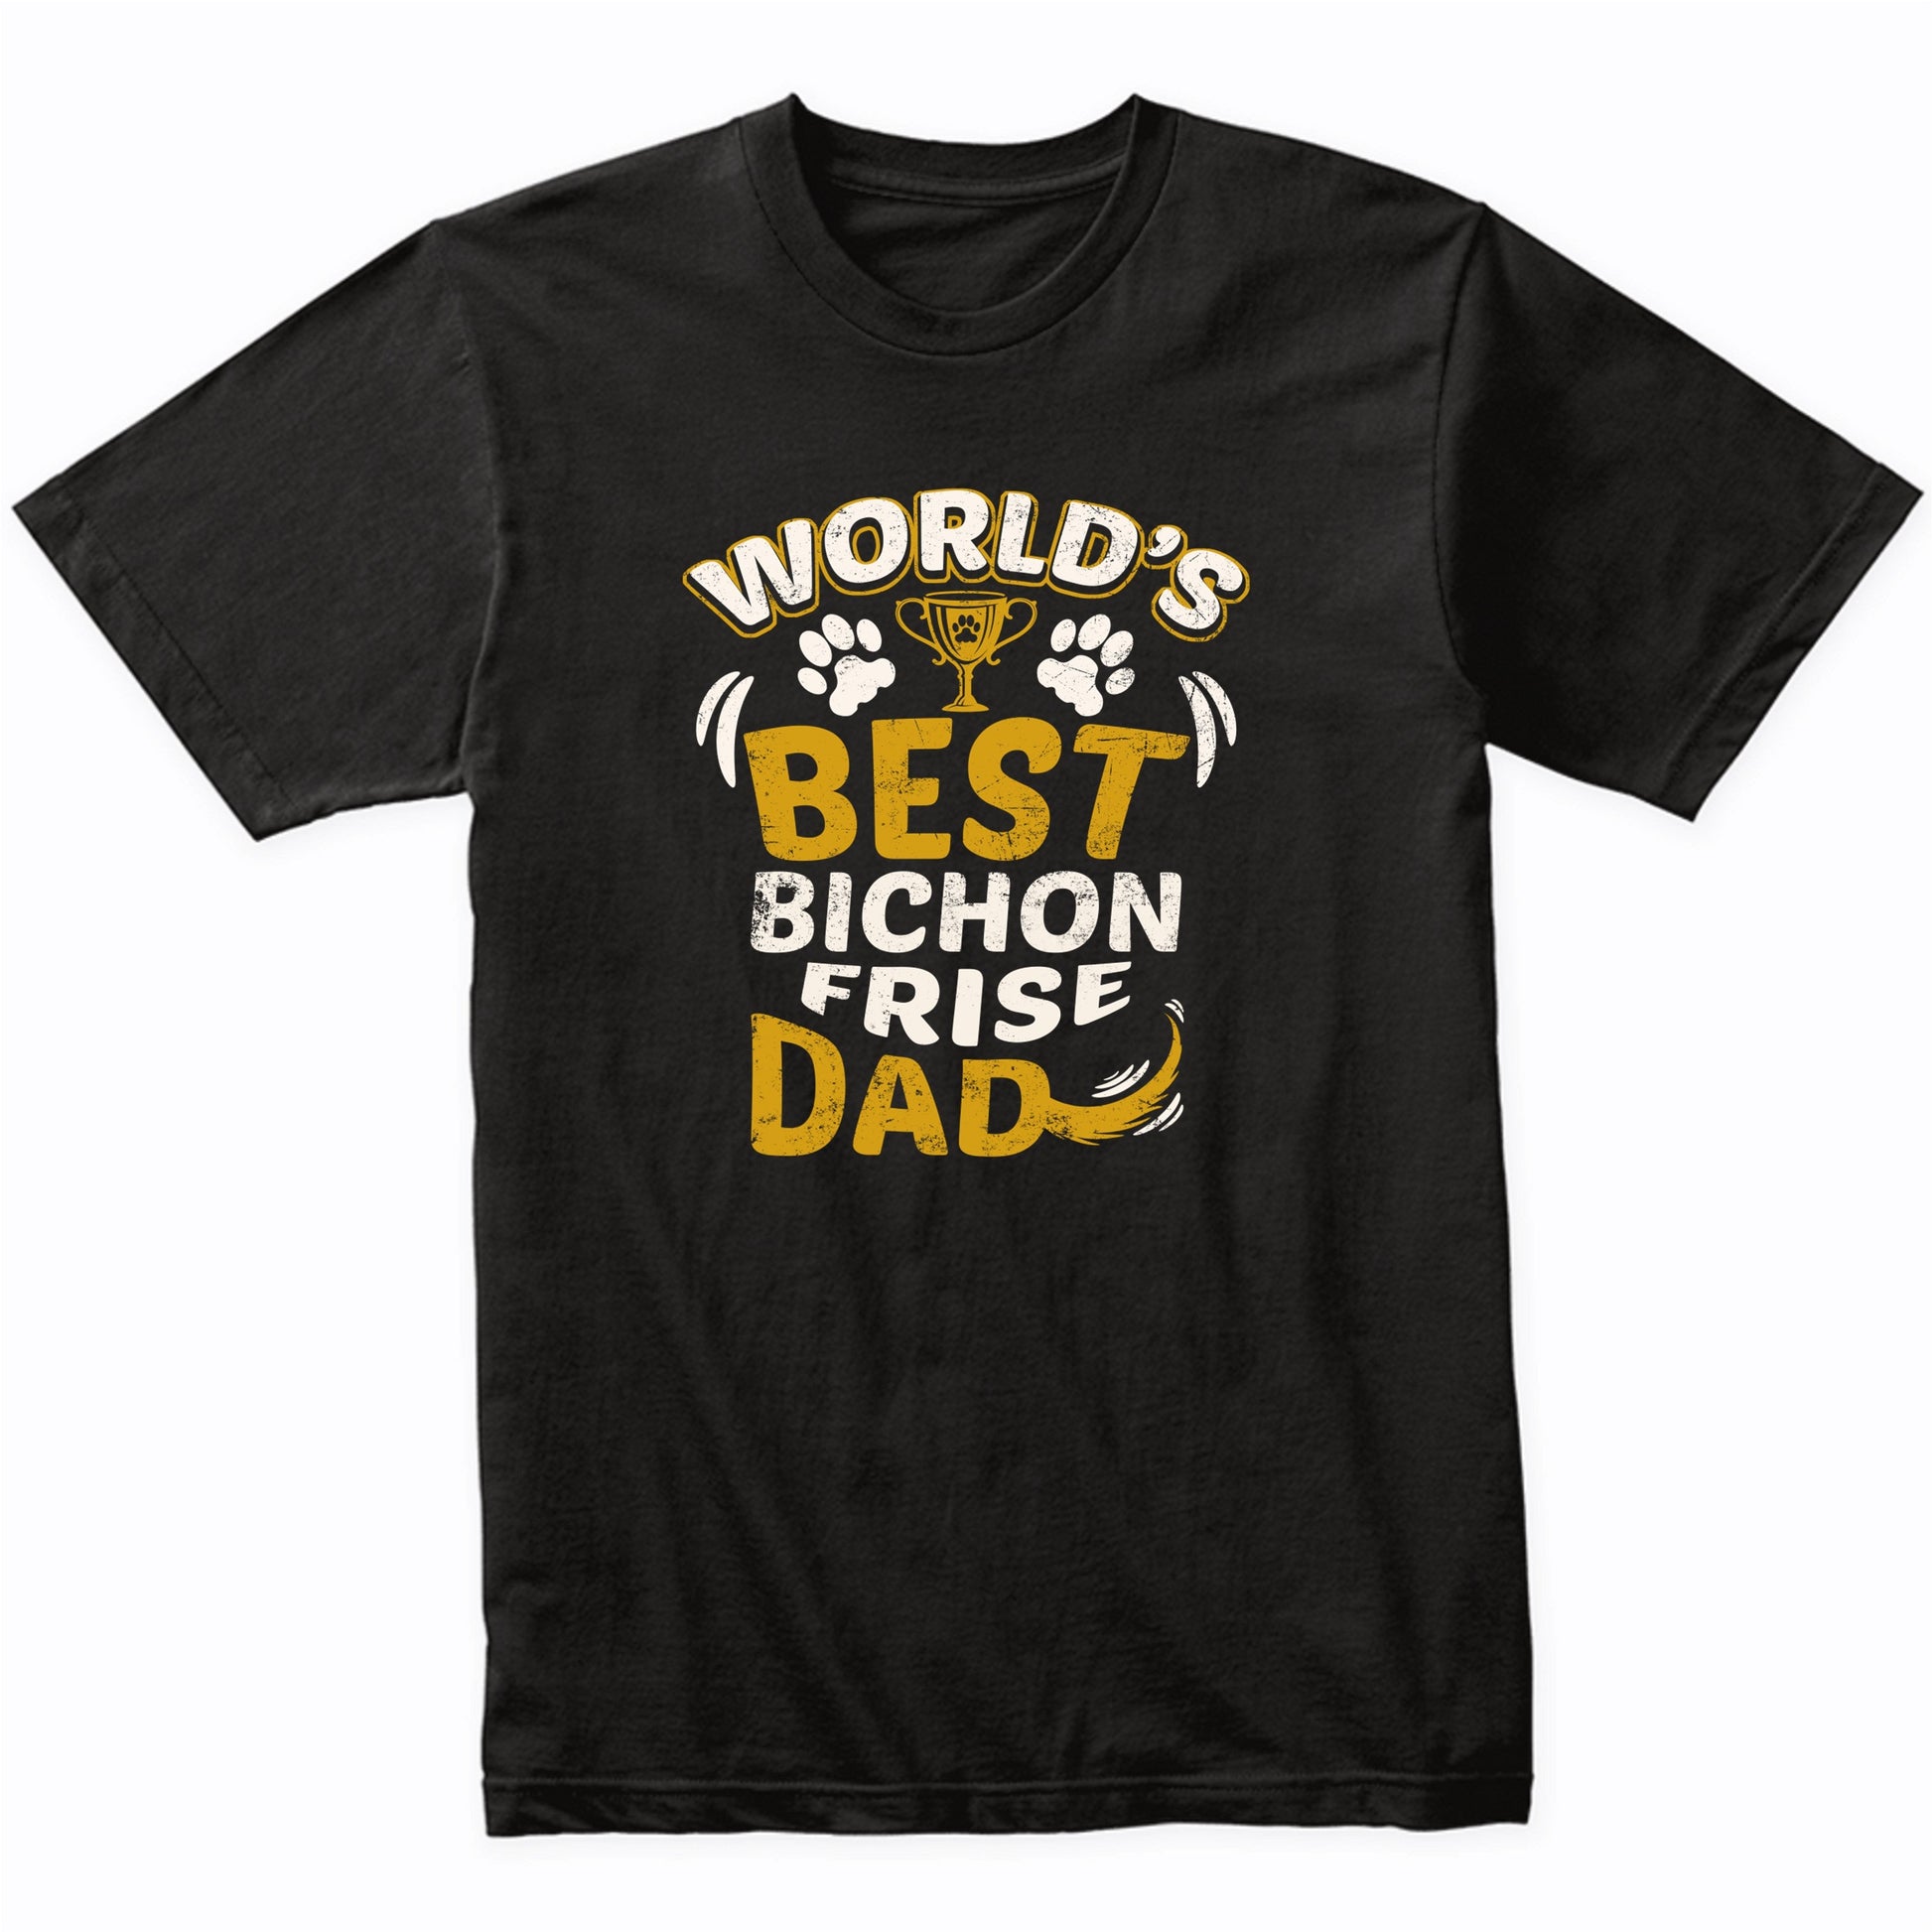 World's Best Bichon Frise Dad Graphic T-Shirt